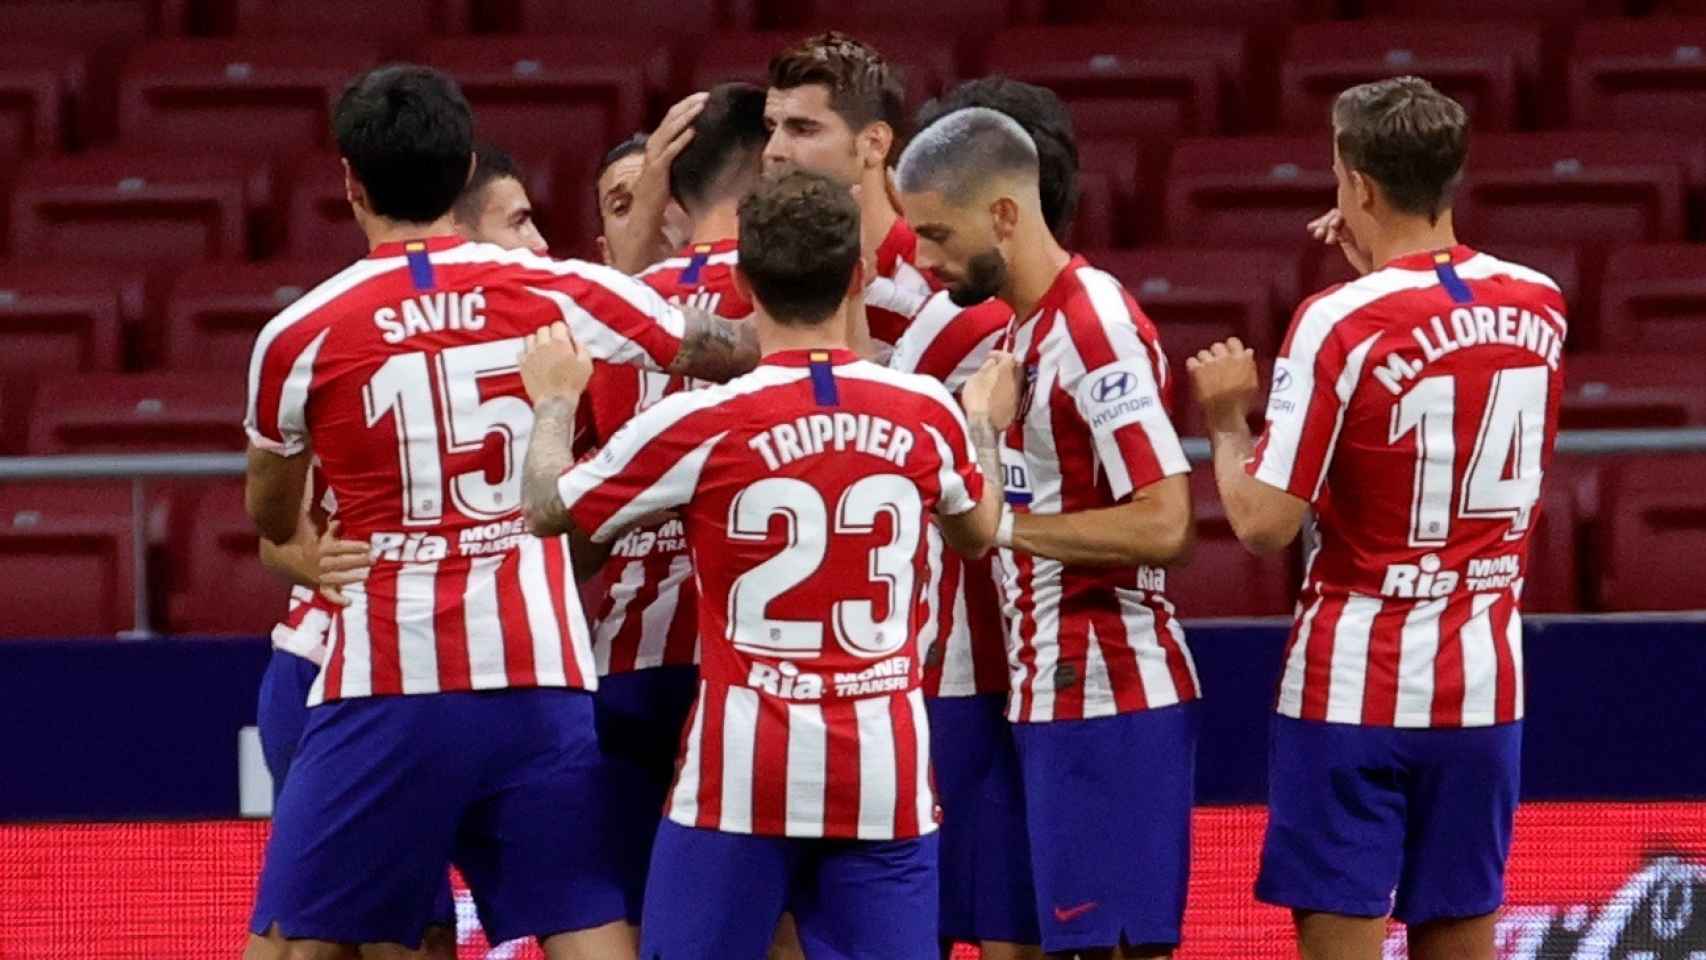 Los jugadores del Atlético de Madrid celebran uno de los goles de Álvaro Morata ante el Mallorca